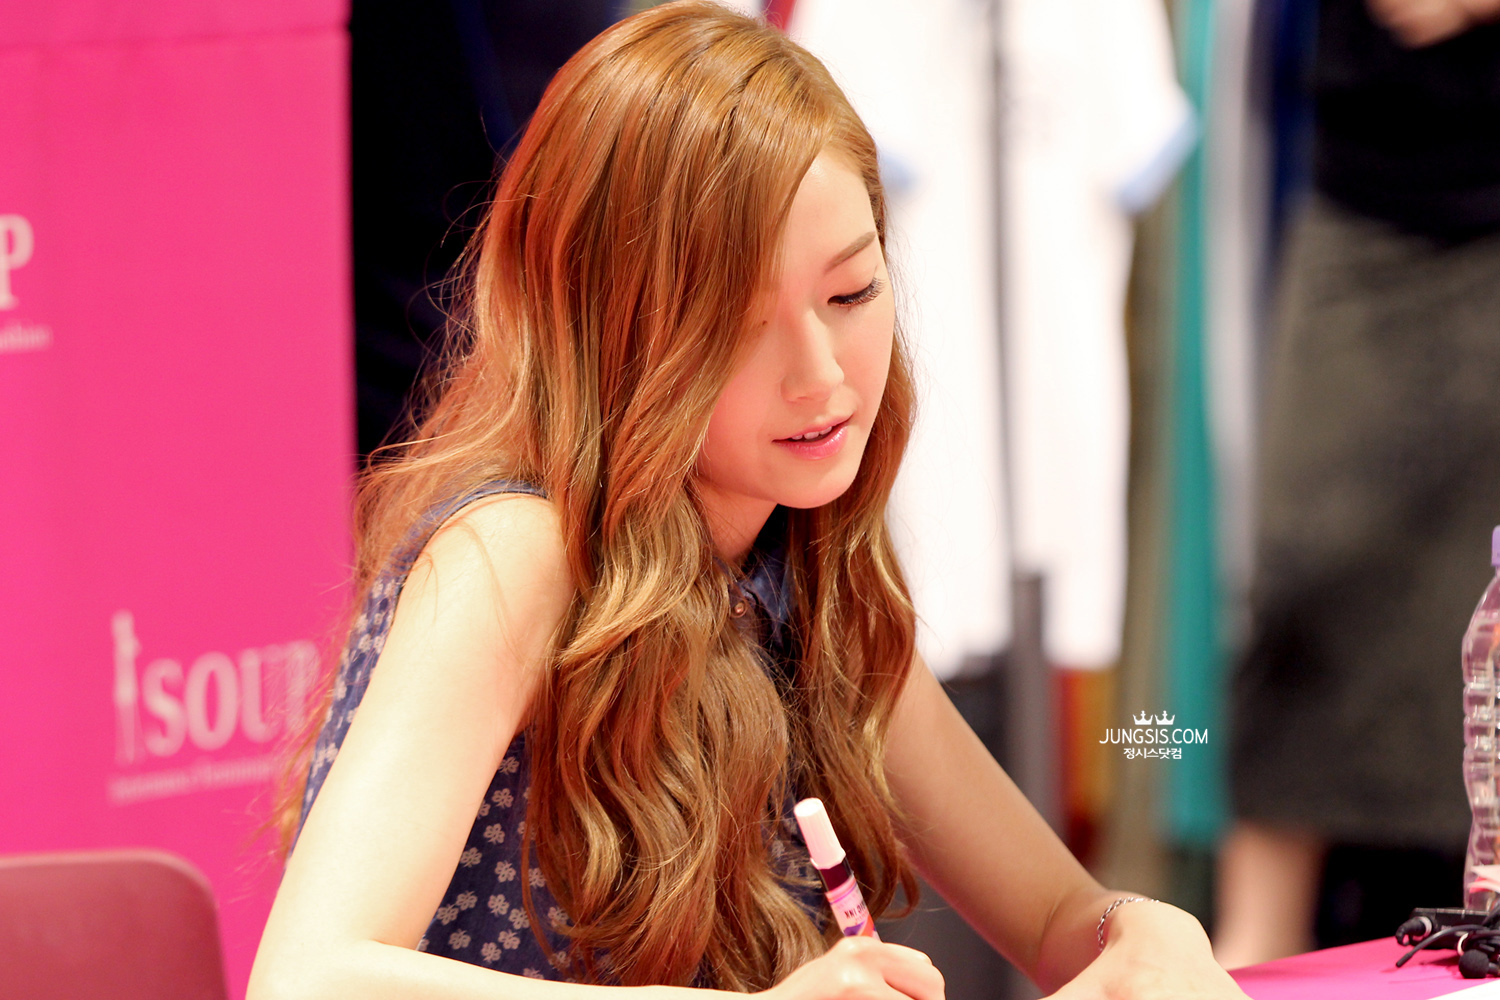 [PIC][04-04-2014]Jessica tham dự buổi fansign cho thương hiệu "SOUP" vào trưa nay - Page 3 257E4B4353A447A41D35A6